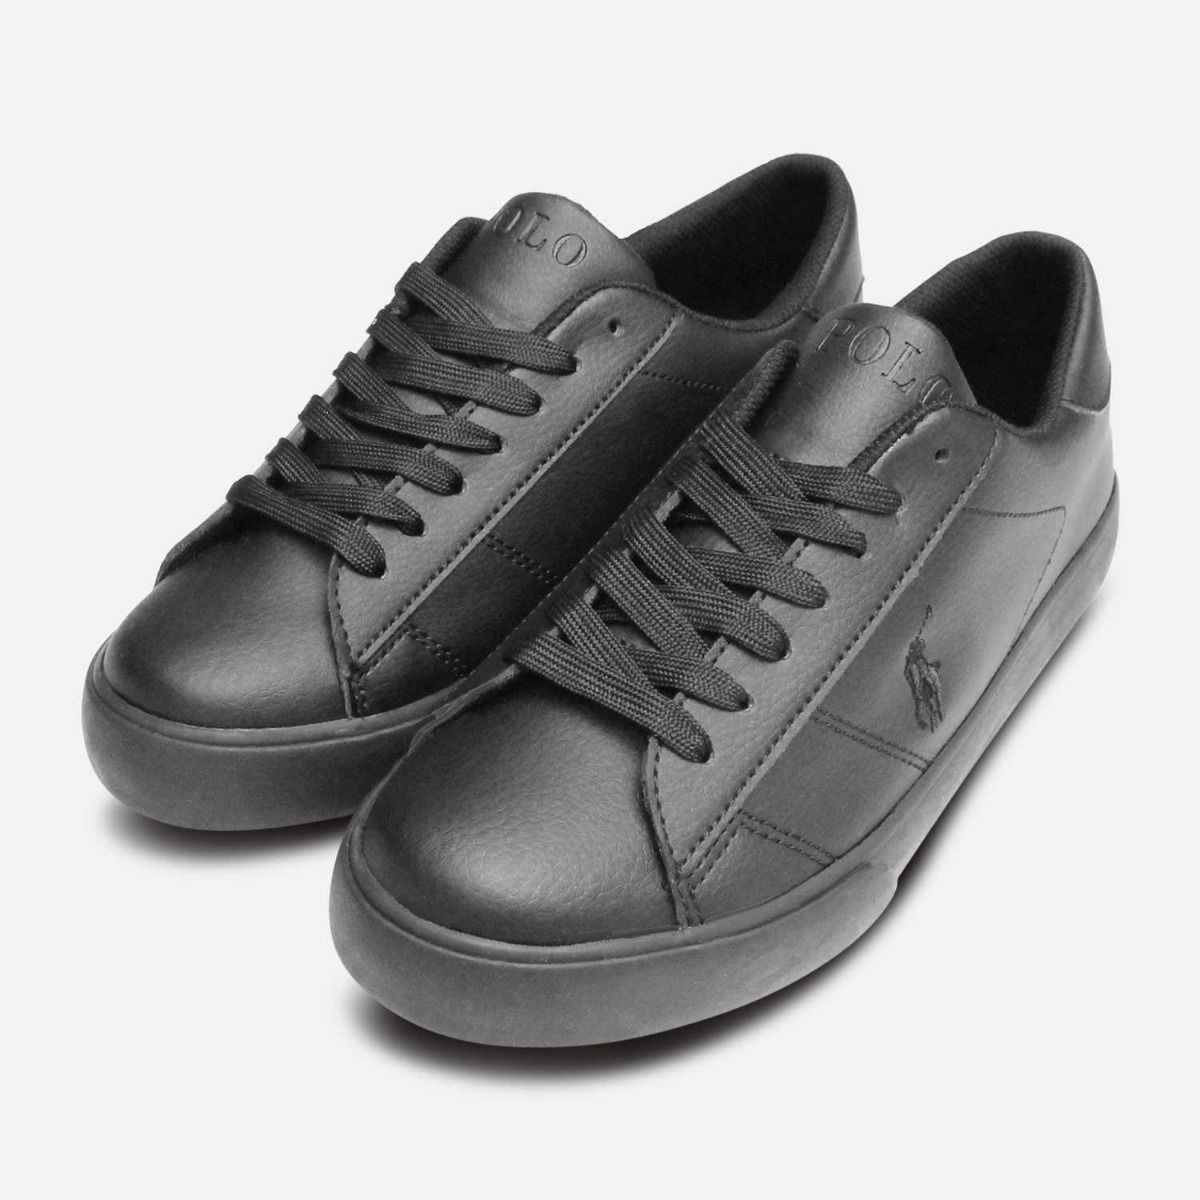 all black designer shoes